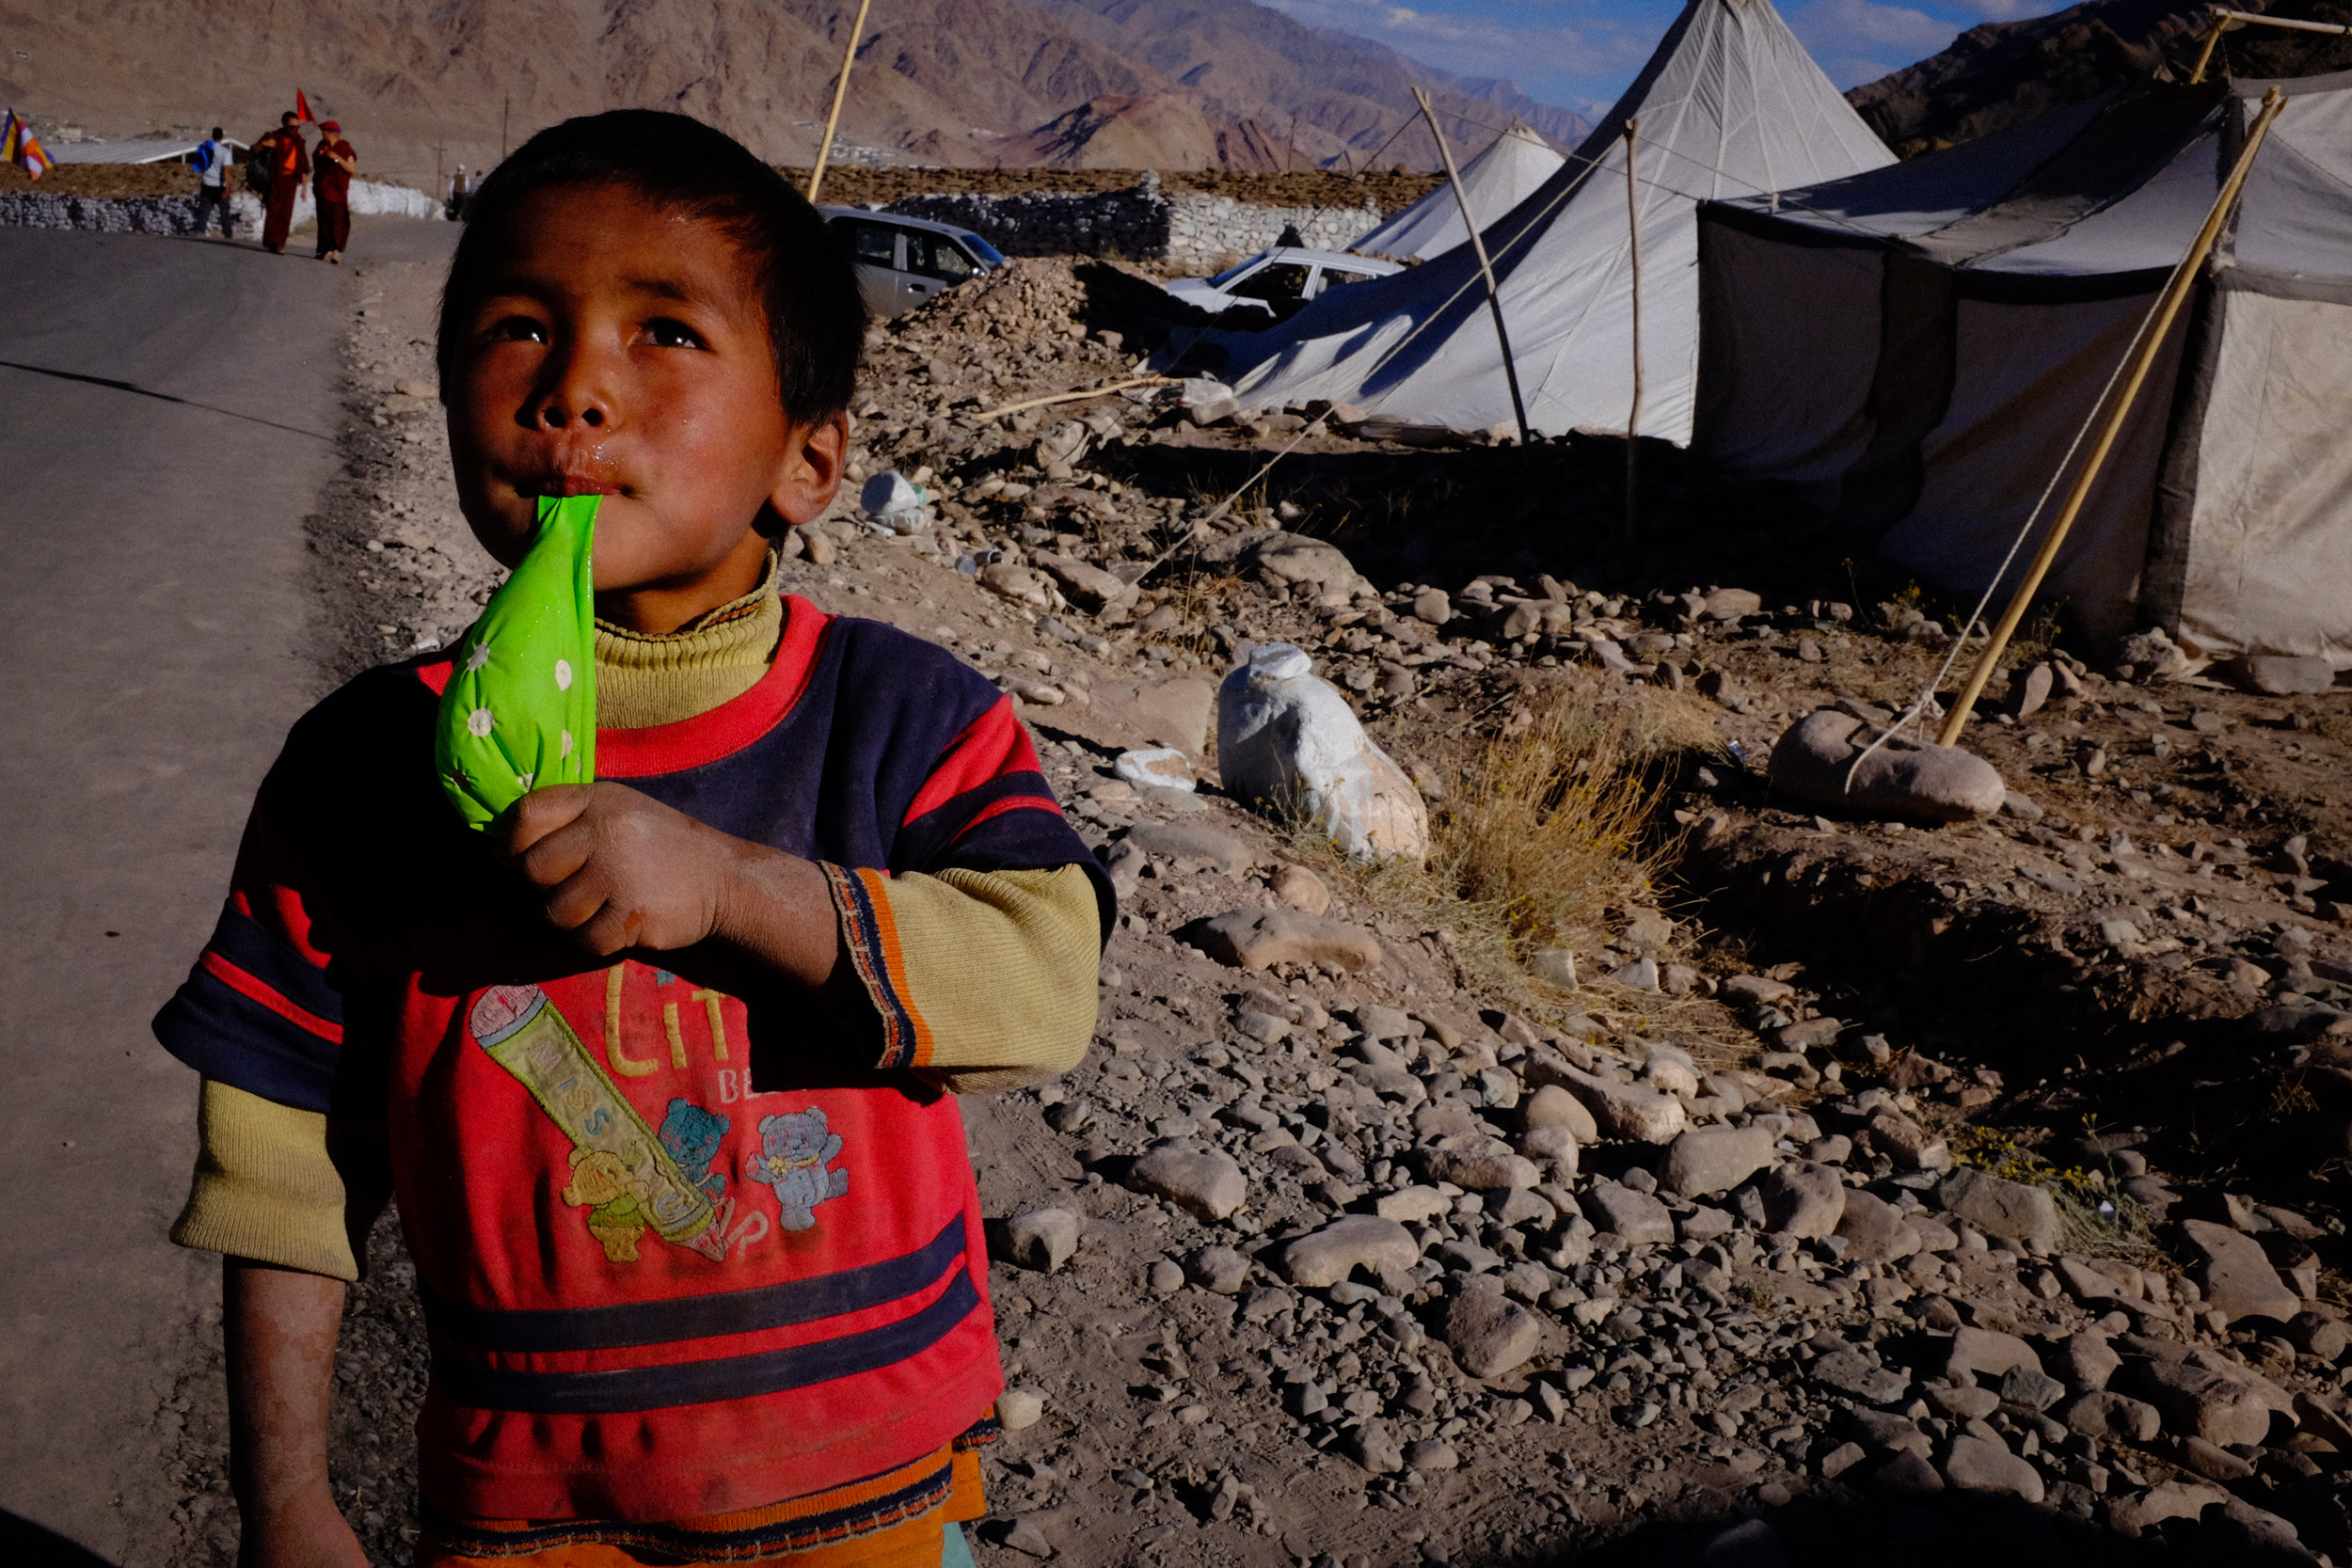 Hemis, Ladakh, 2016